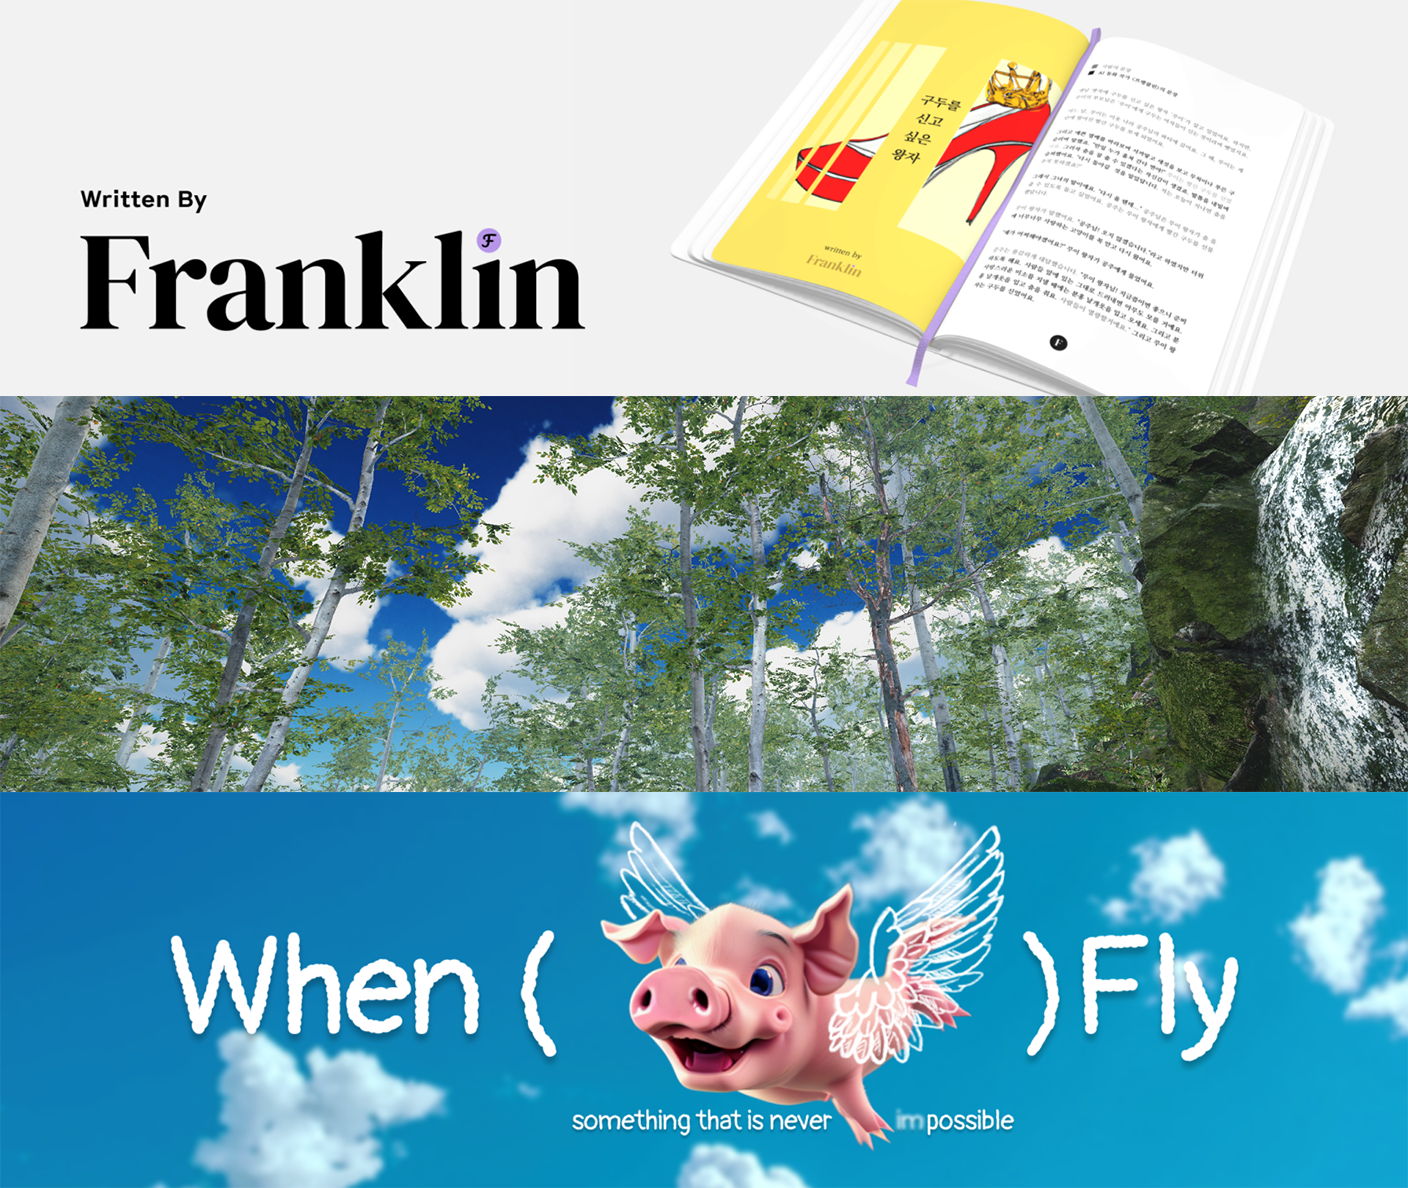 '지속 가능성, 환경, 동물권'을 다룬 <프랭클린>, <Sunny Day>, <돼지, 날다> (위부터)